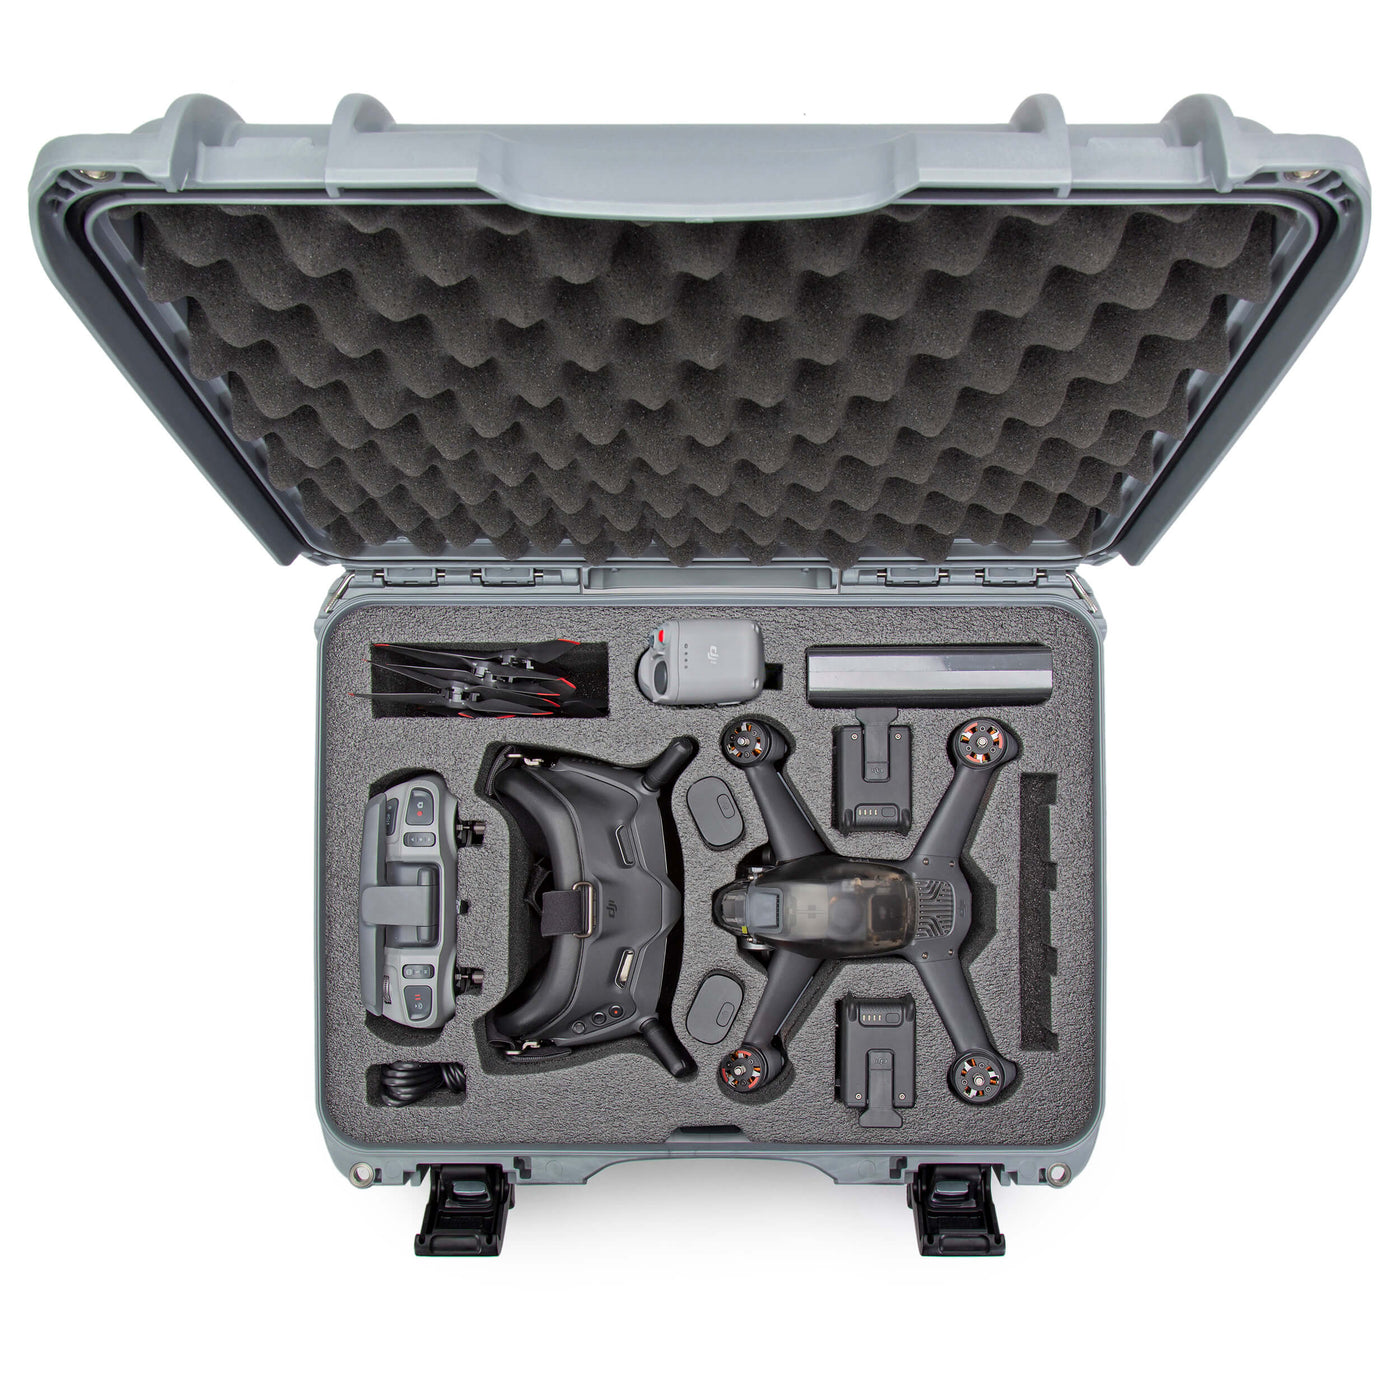 NANUK 925 DJI™ FPV Combo valise de protection